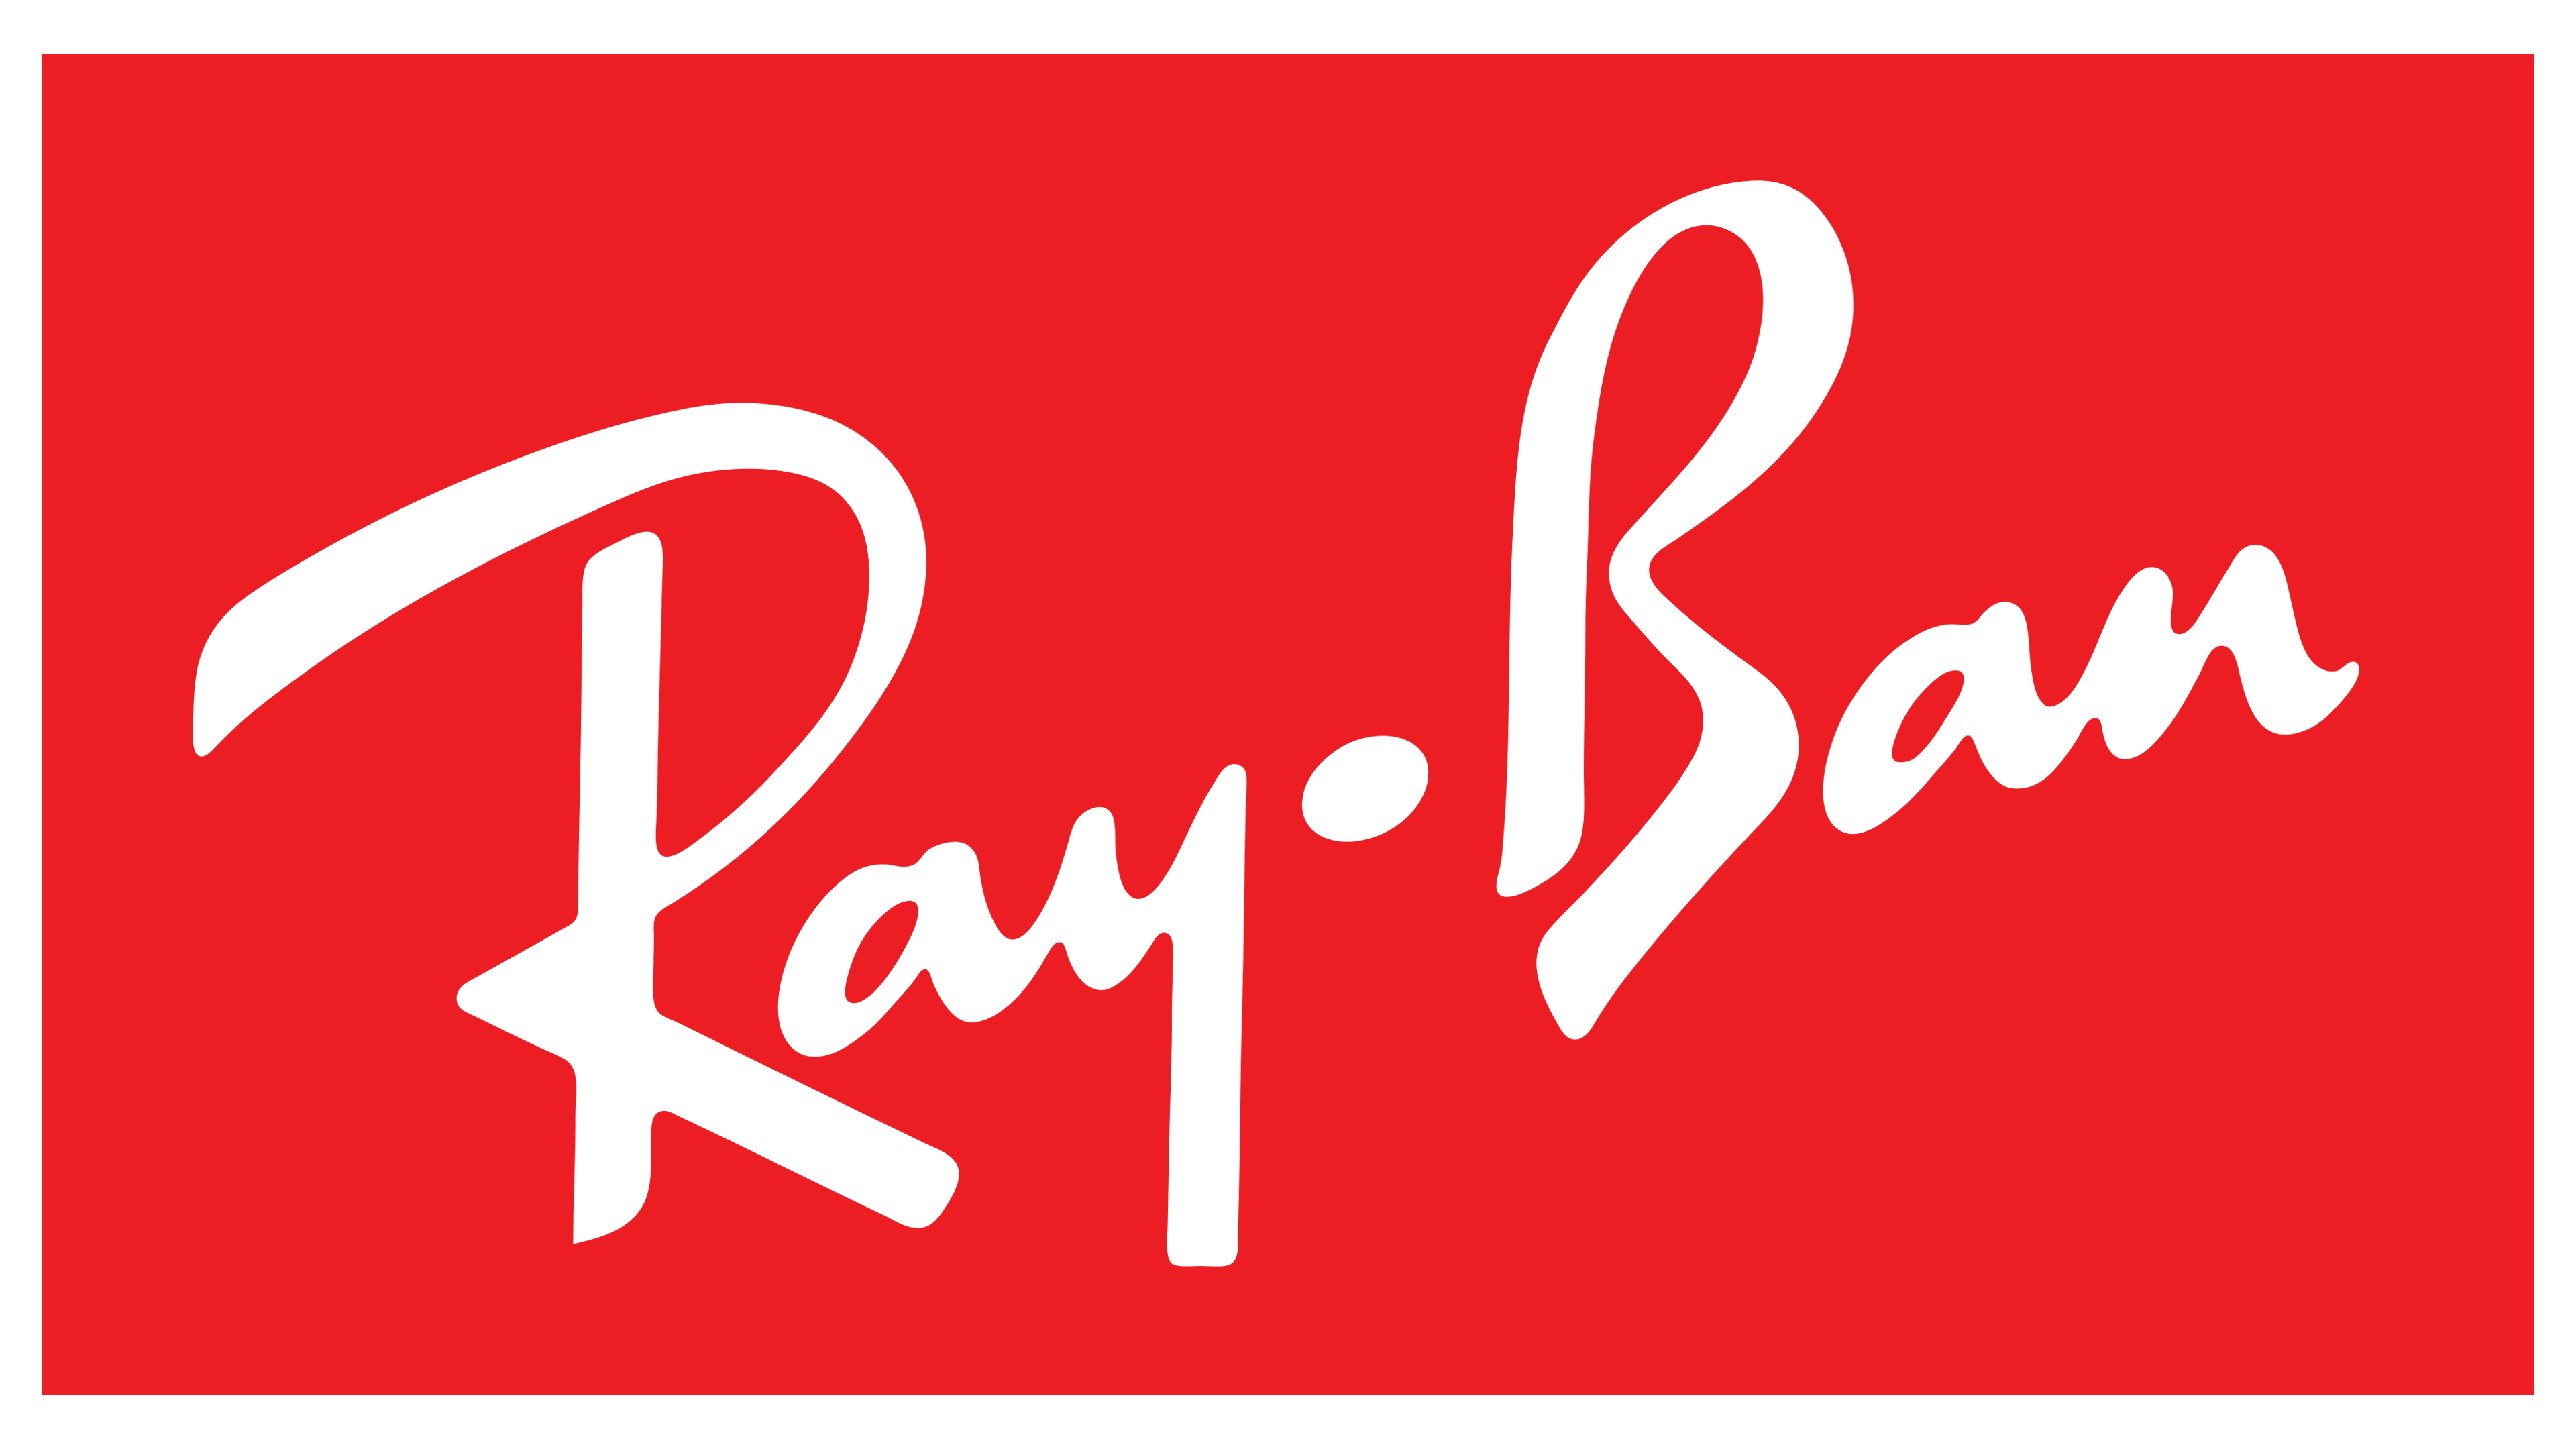 Ray Ban Logo Logos De Marcas